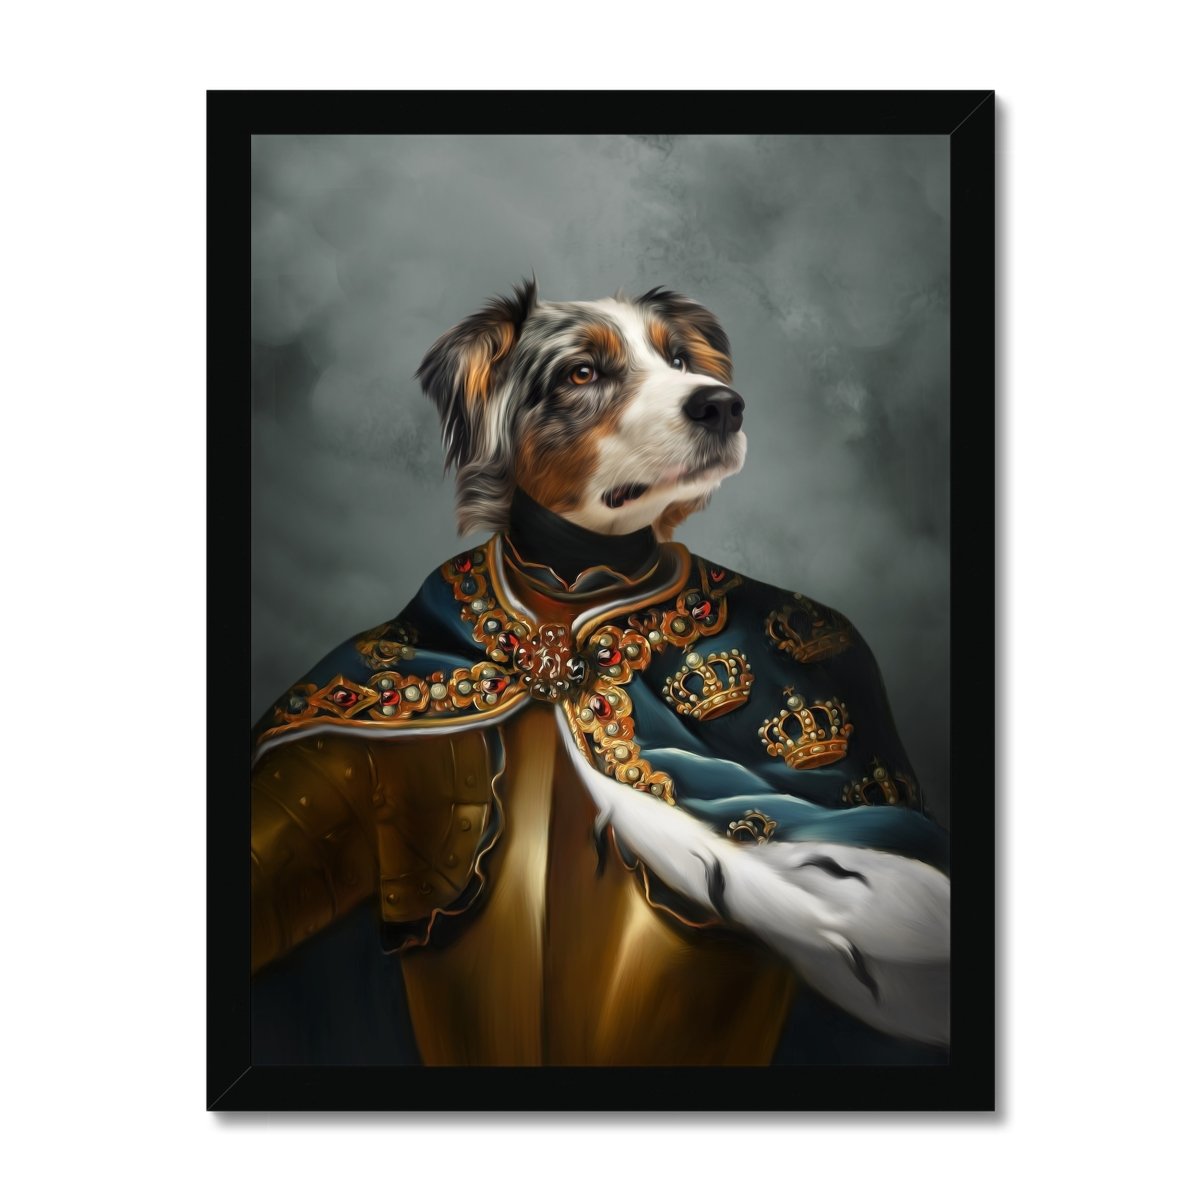 Paw & Glory, paw and glory, pet portrait singapore, pet portrait admiral, dog portrait images, pictures for pets, pet portraits leeds, the general portrait, pet portrait